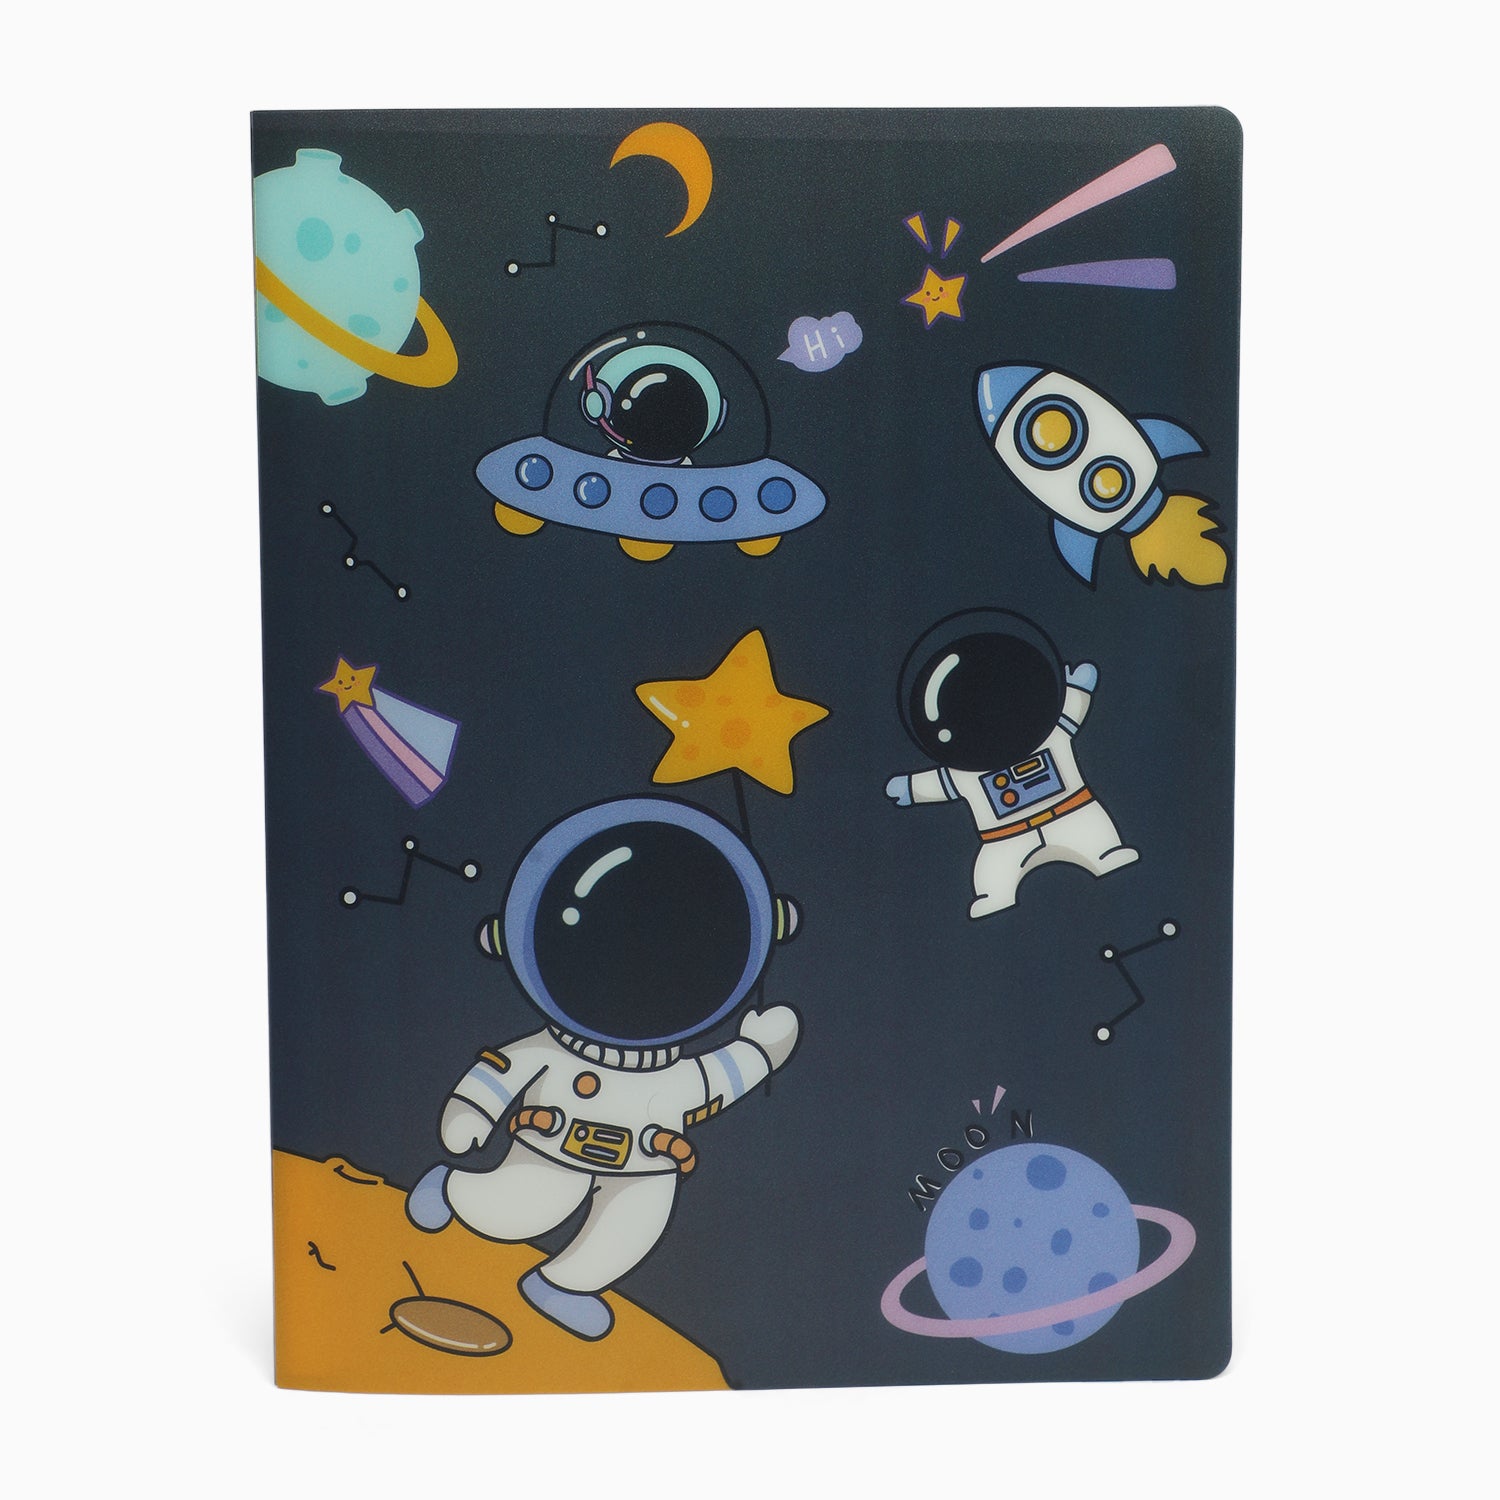 ZORSE space 20 pocket file folder for kids documents - Kidspark